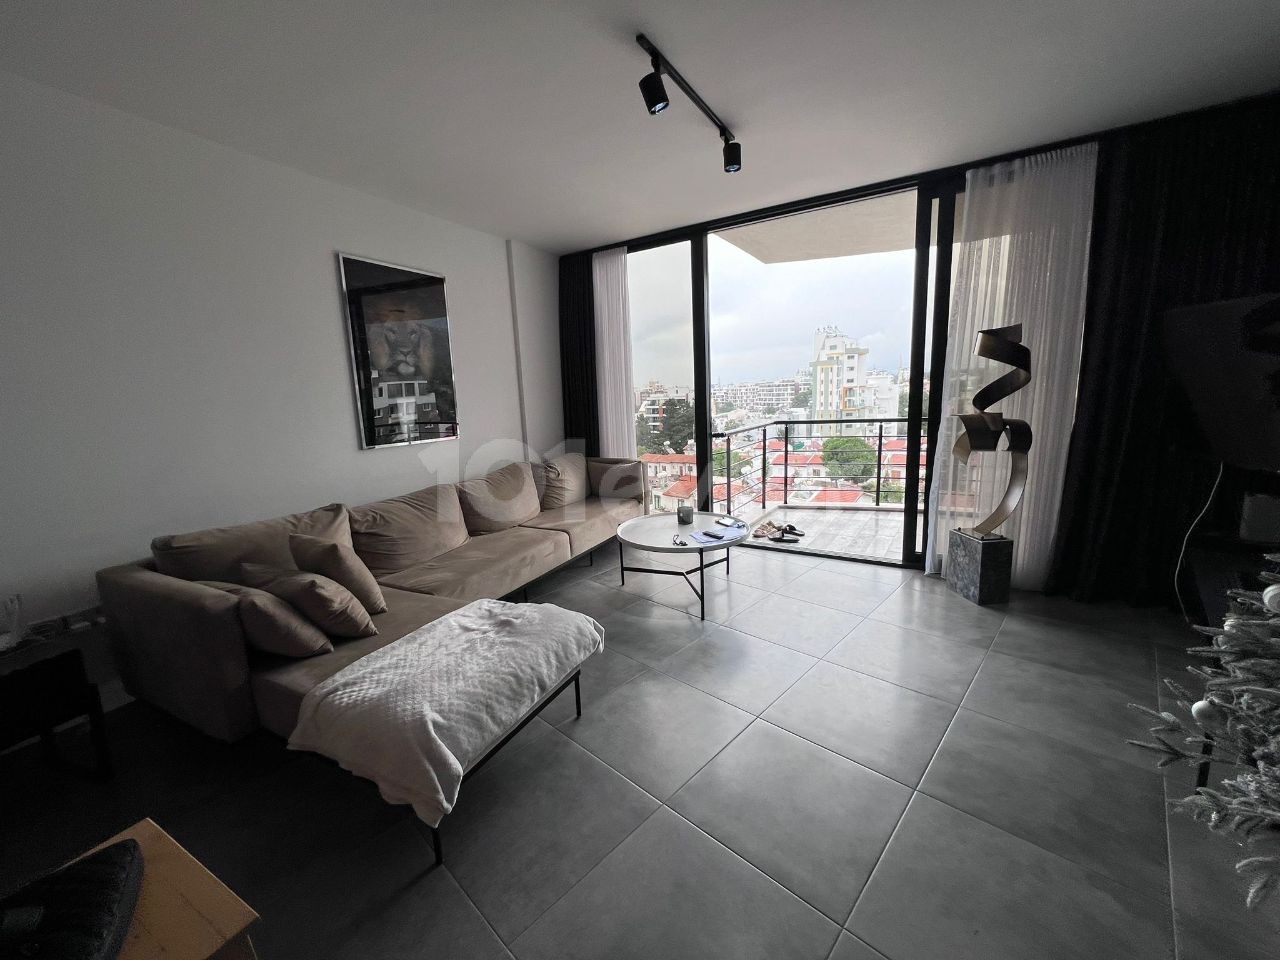 Роскошная квартира 2+1 площадью 90 м² на продажу в центре Кирении на острове Редстоун